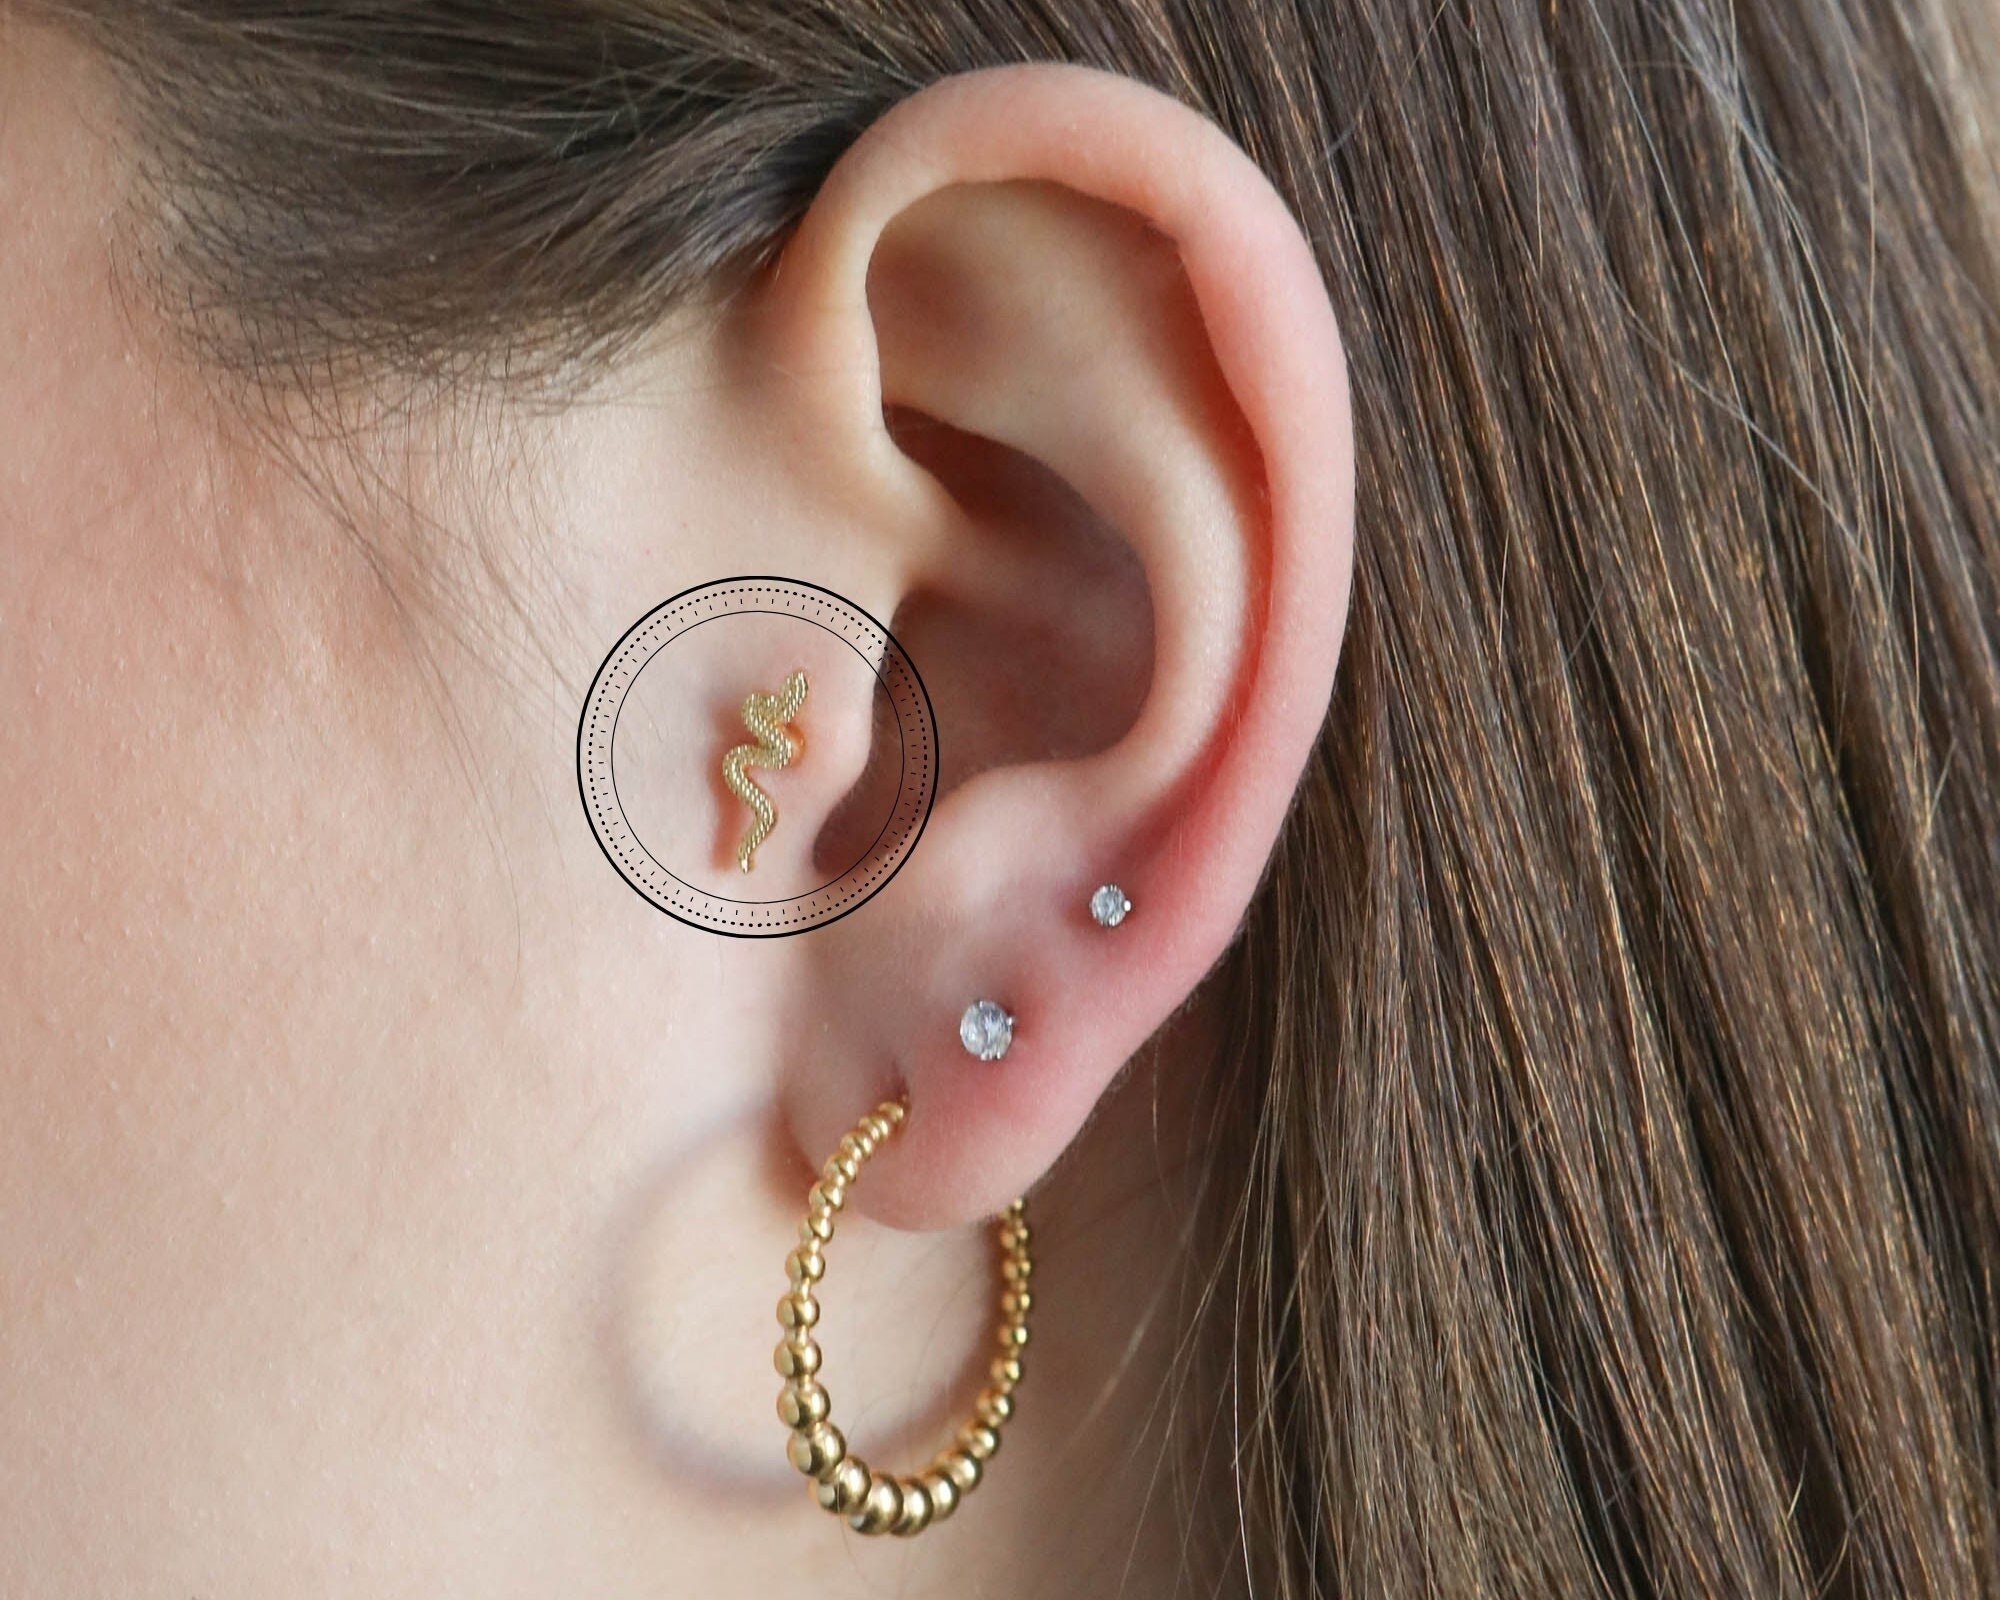 Snake Heart Helix Piercing Tragus Earring for Women Stainless